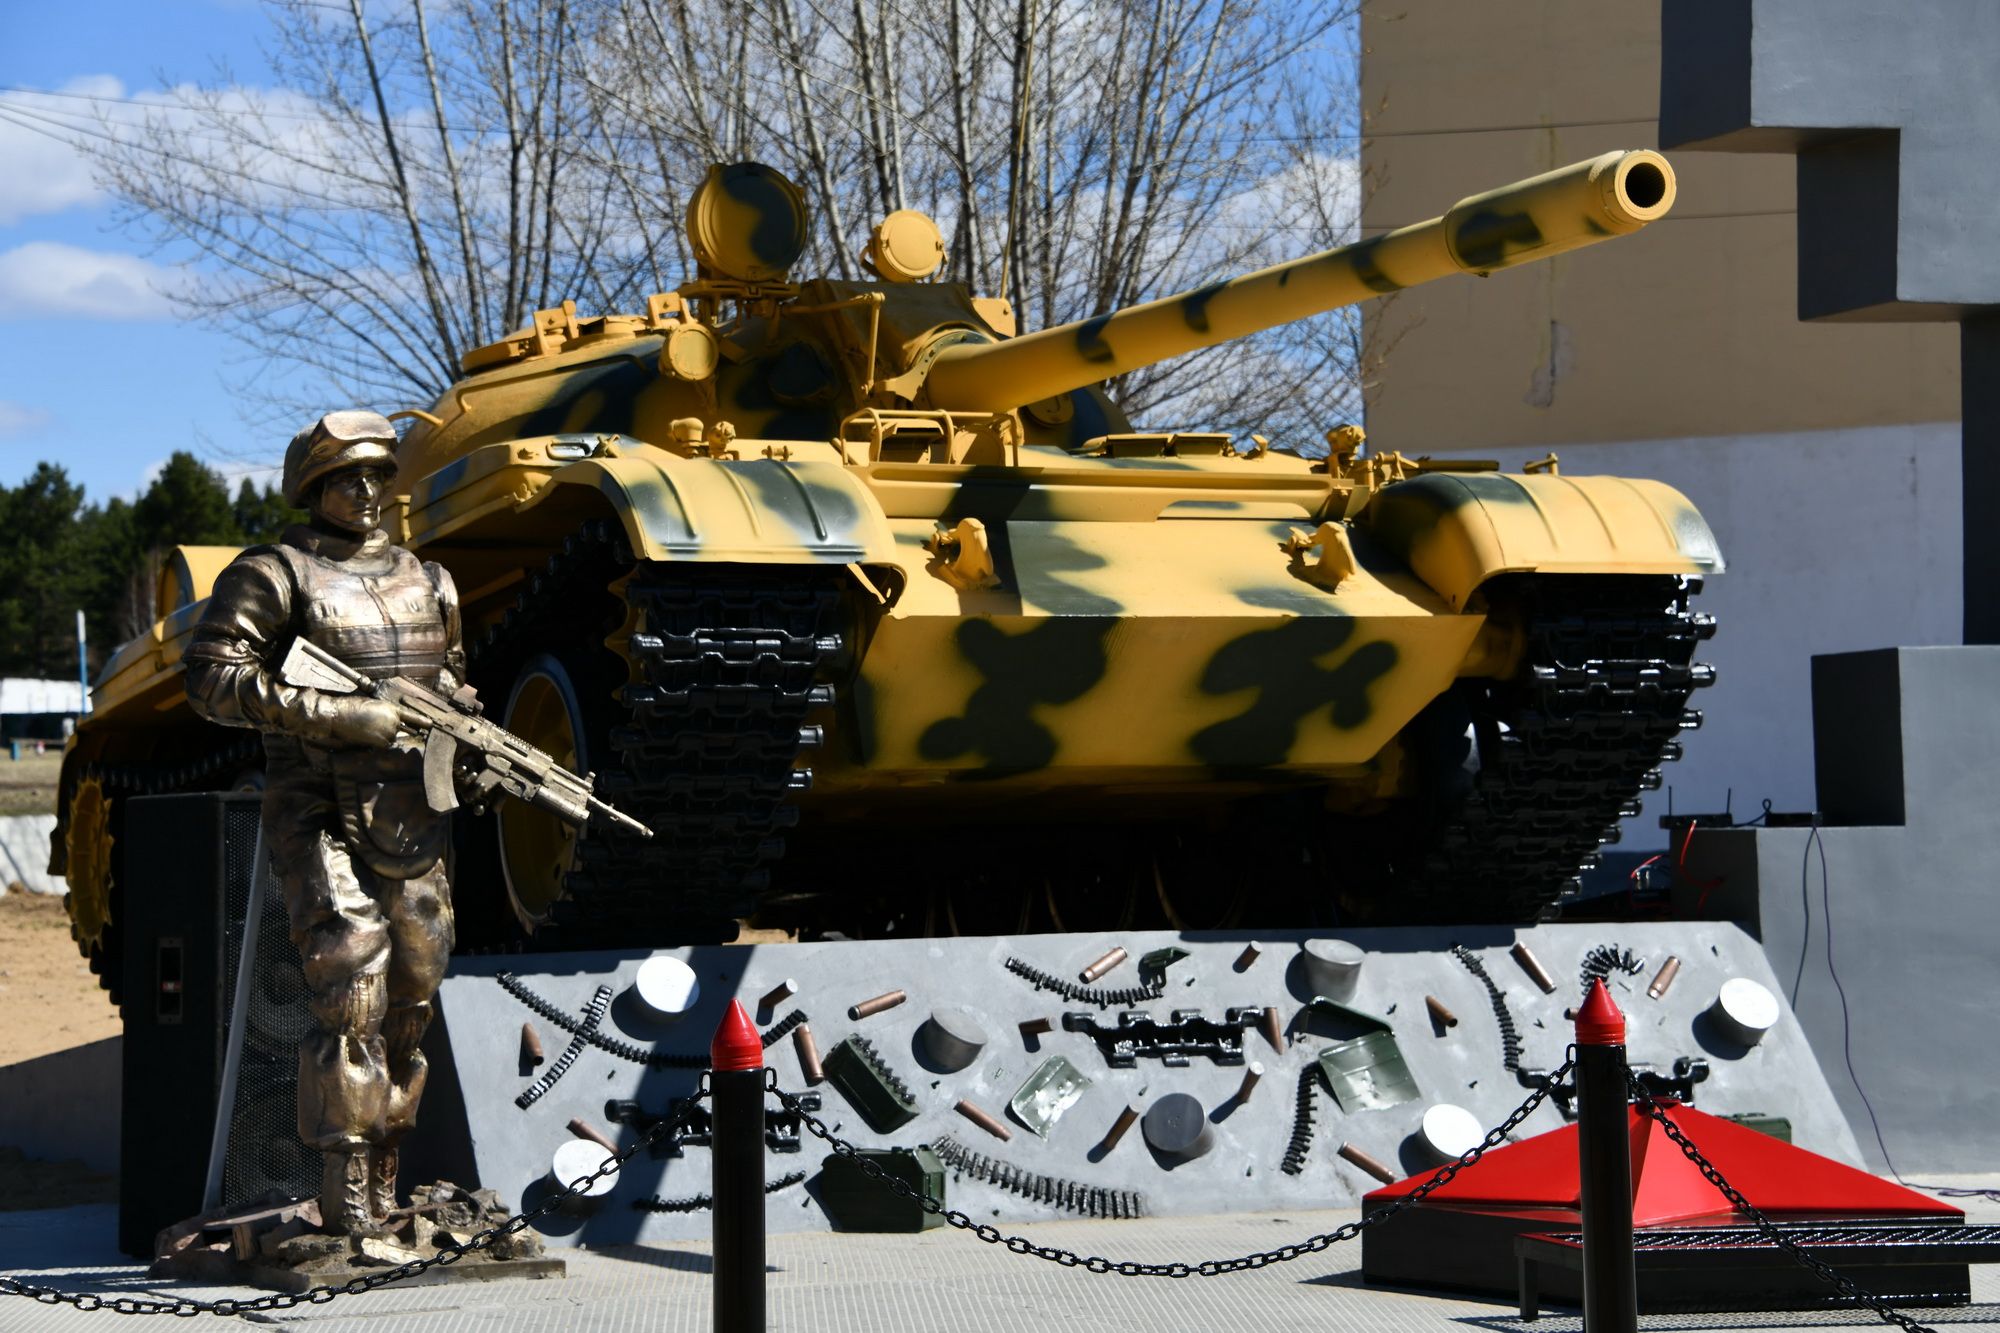 Мемориал в память о забайкальских танкистах — участниках спецопераций, павших в боях за пределами России.